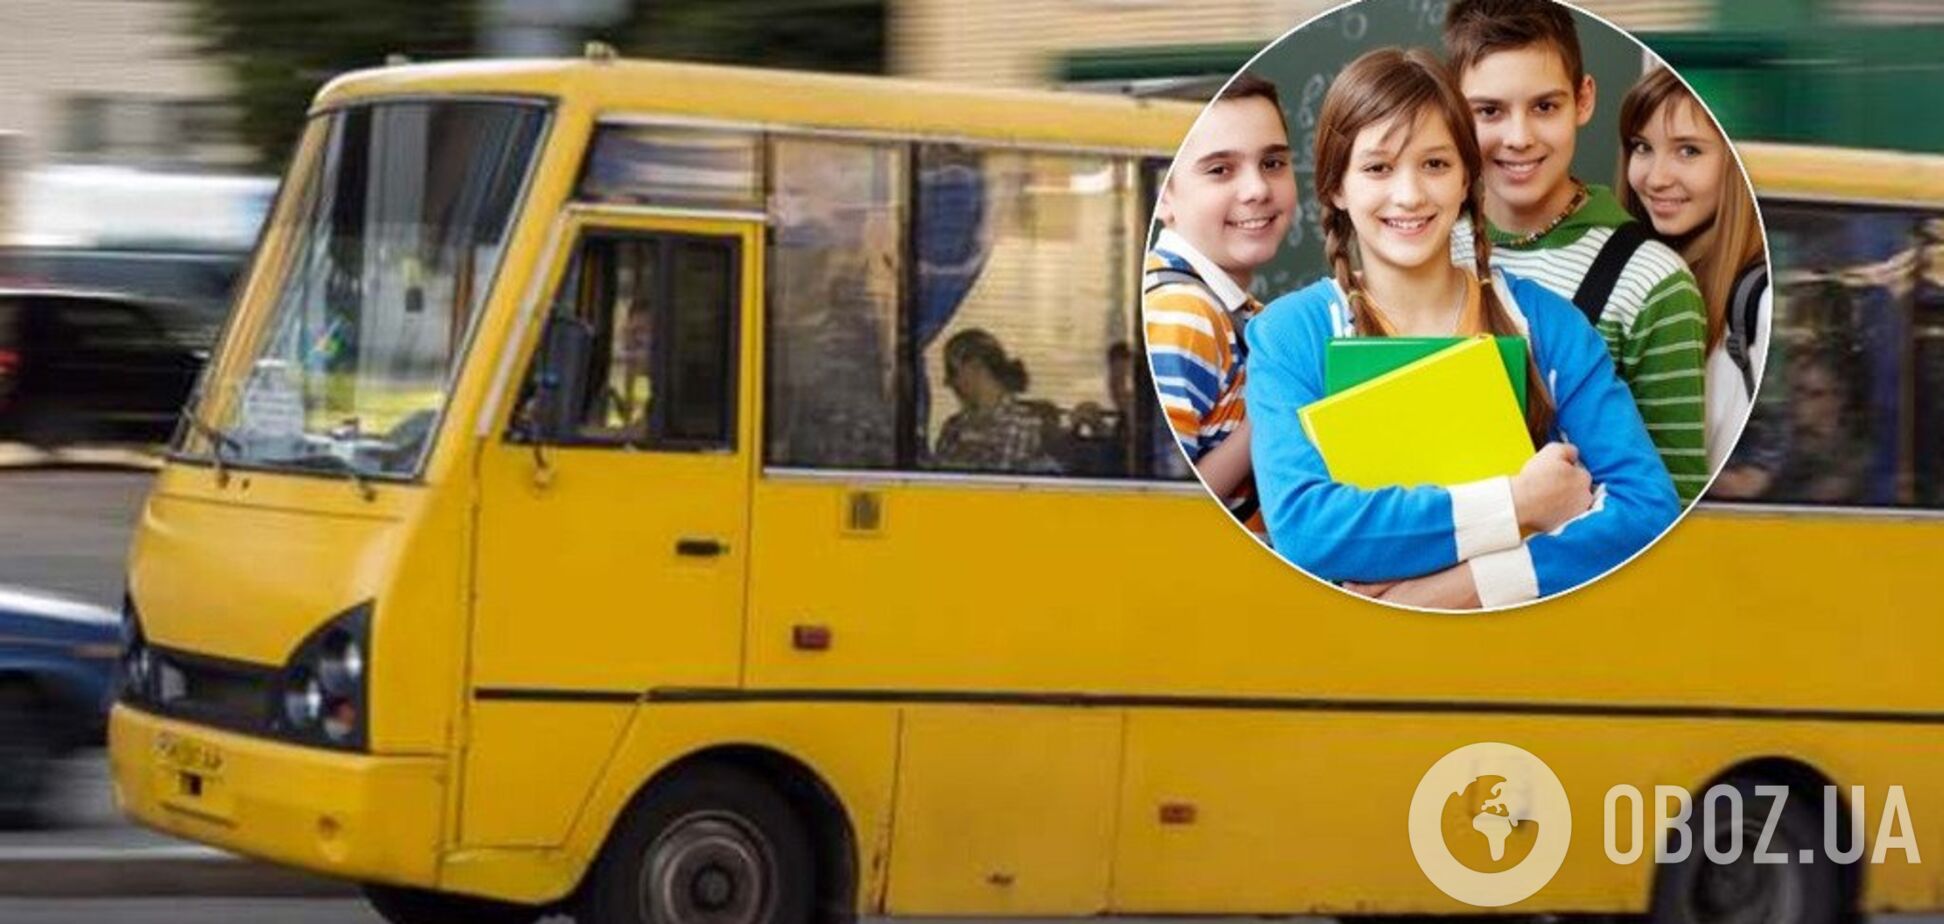 На Киевщине водитель маршрутки попал в скандал со школьниками. Иллюстрация